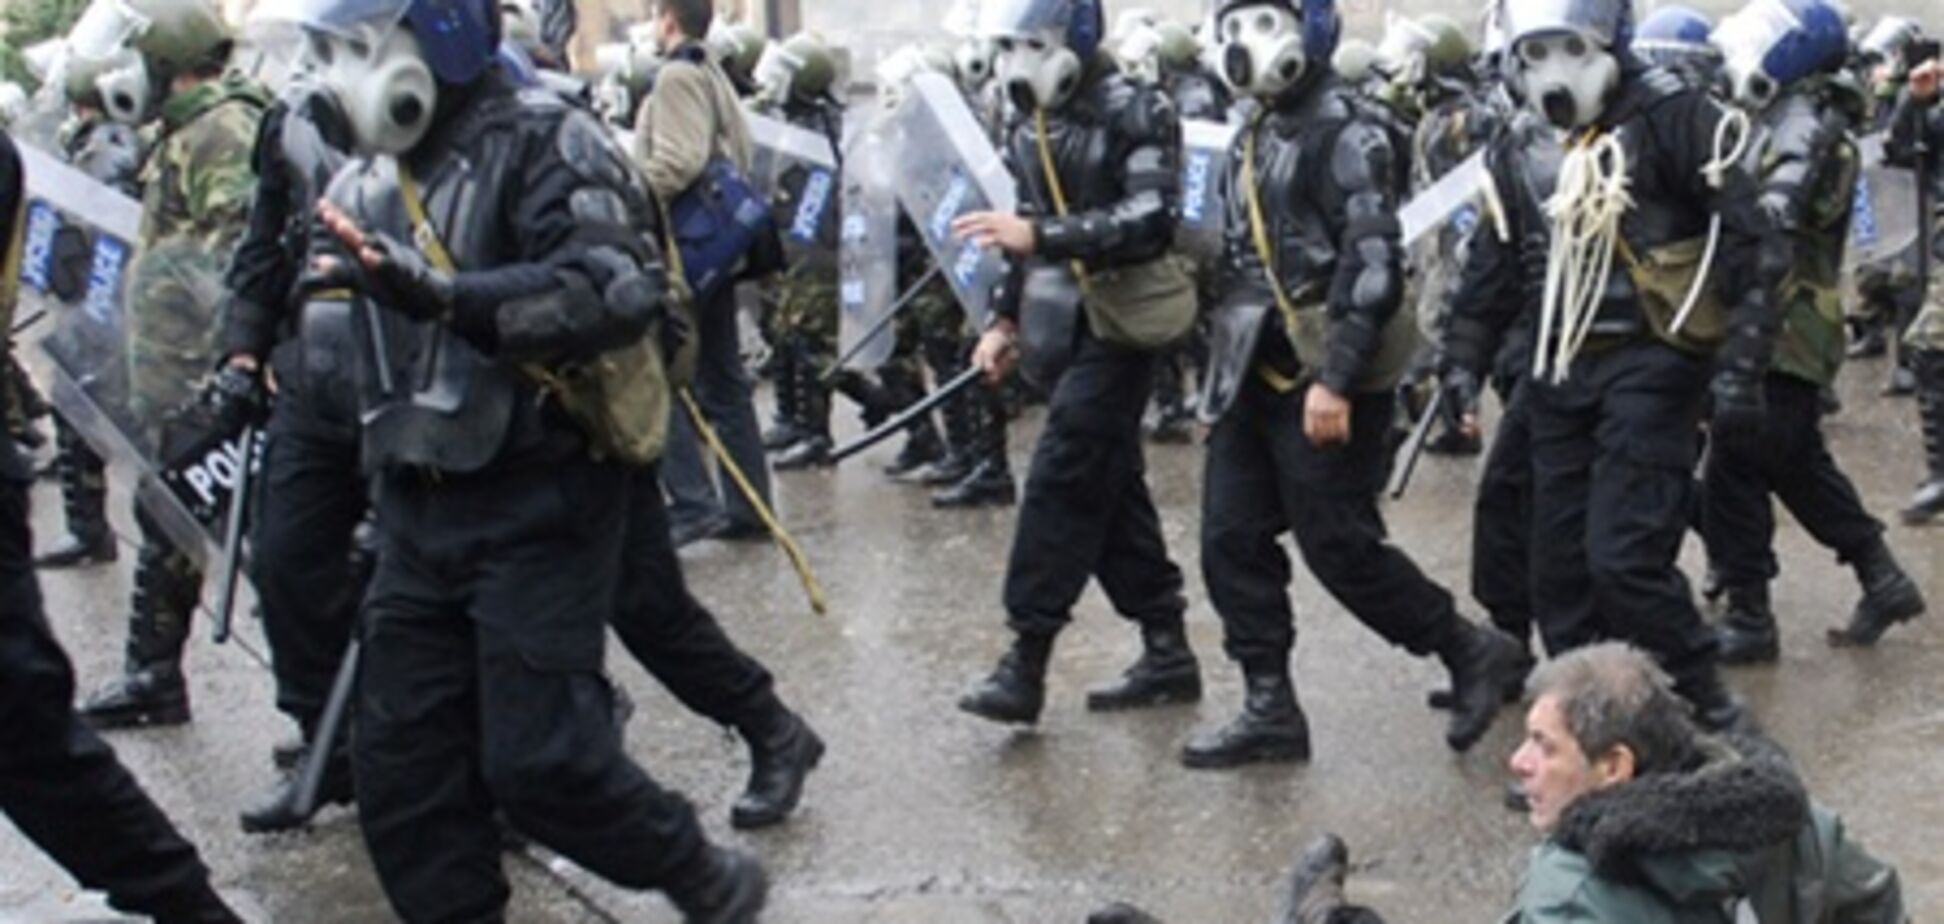 Разгон митинга грузинской оппозиции спецназом. Видео